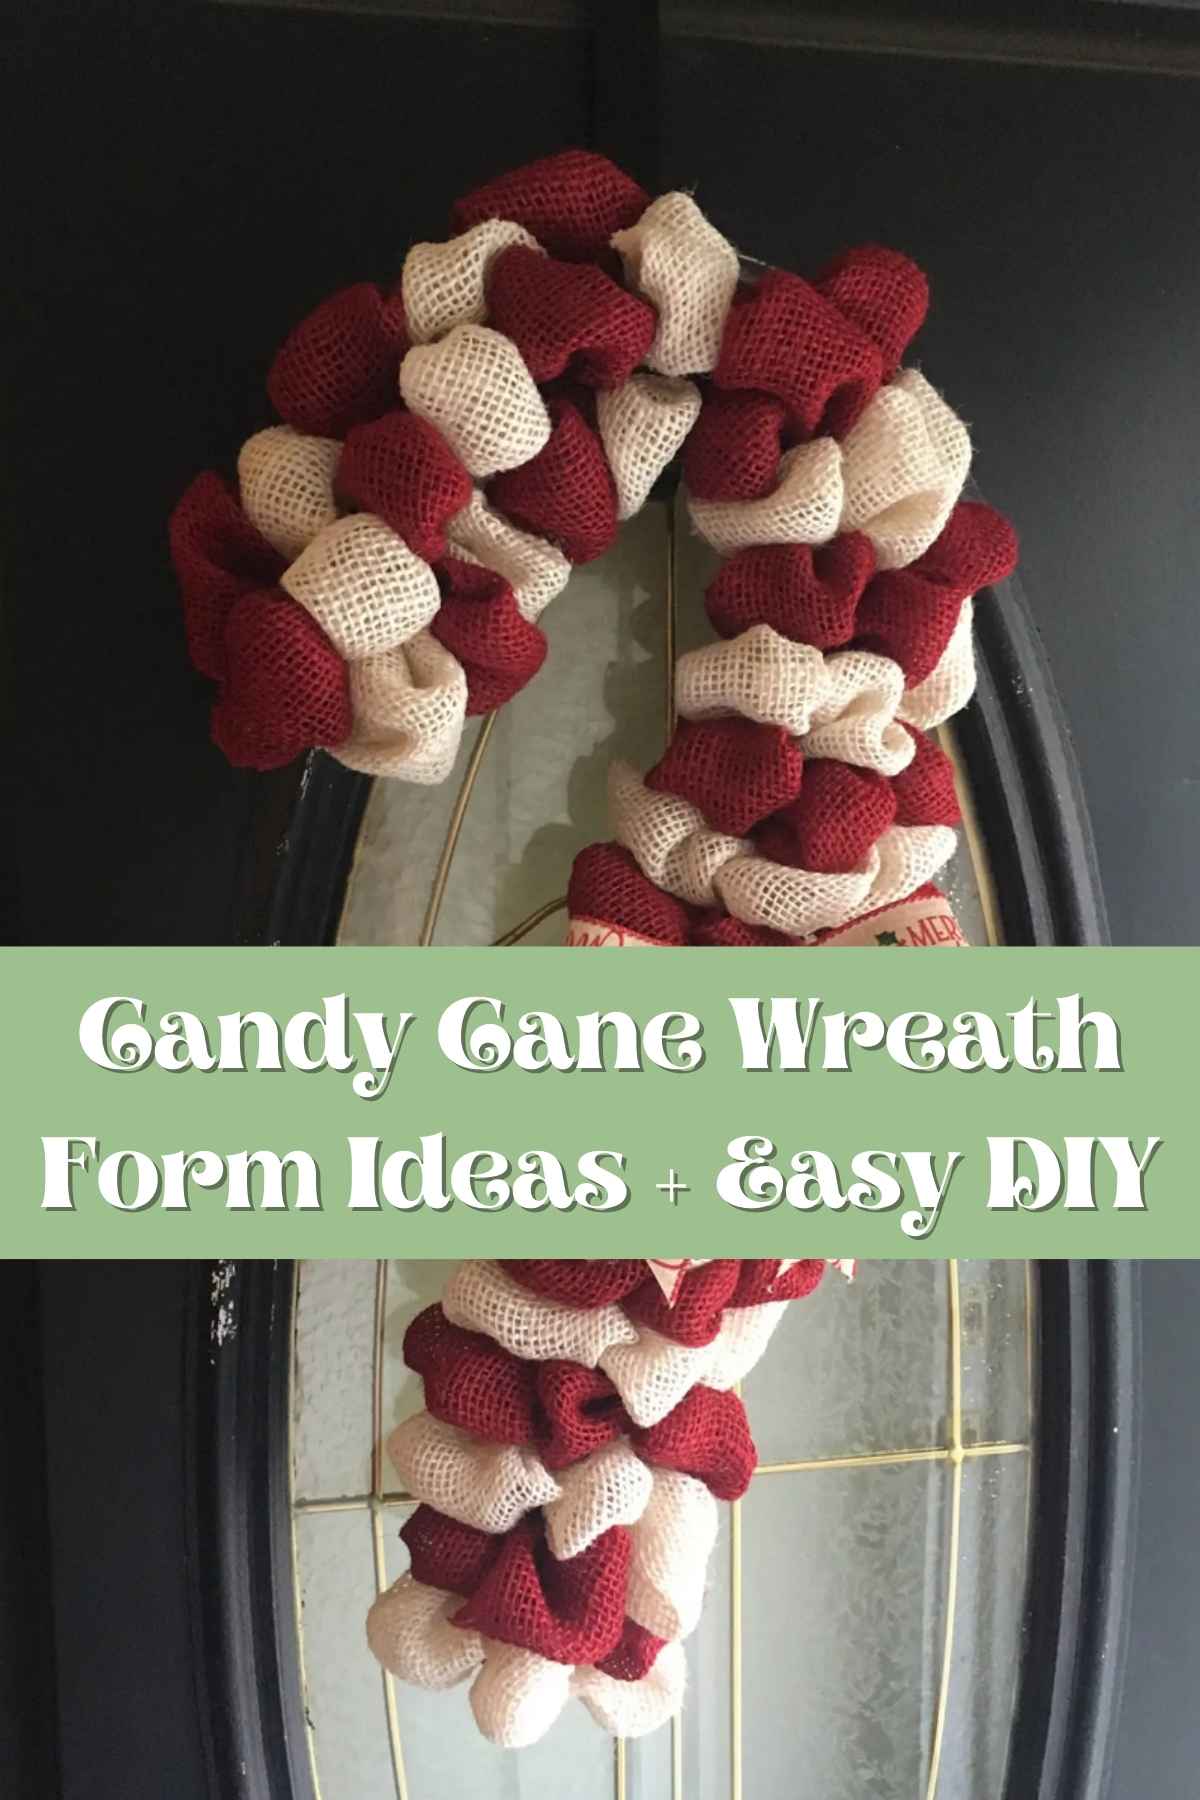 Candy Cane Wreath Form Ideas + Easy DIY